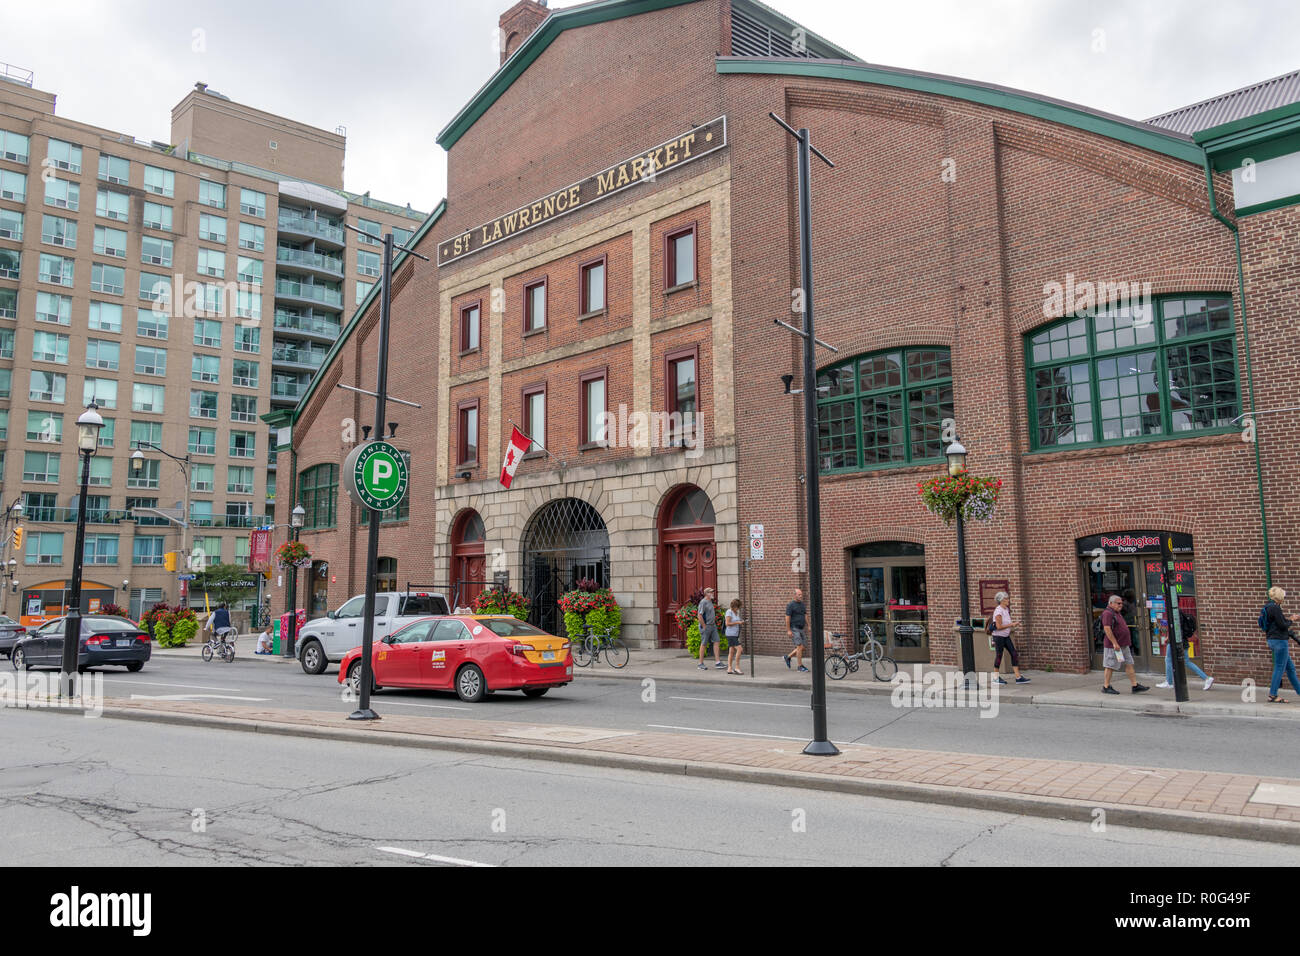 St Lawrence Markt Gebäude, Toronto, Kanada Stockfoto